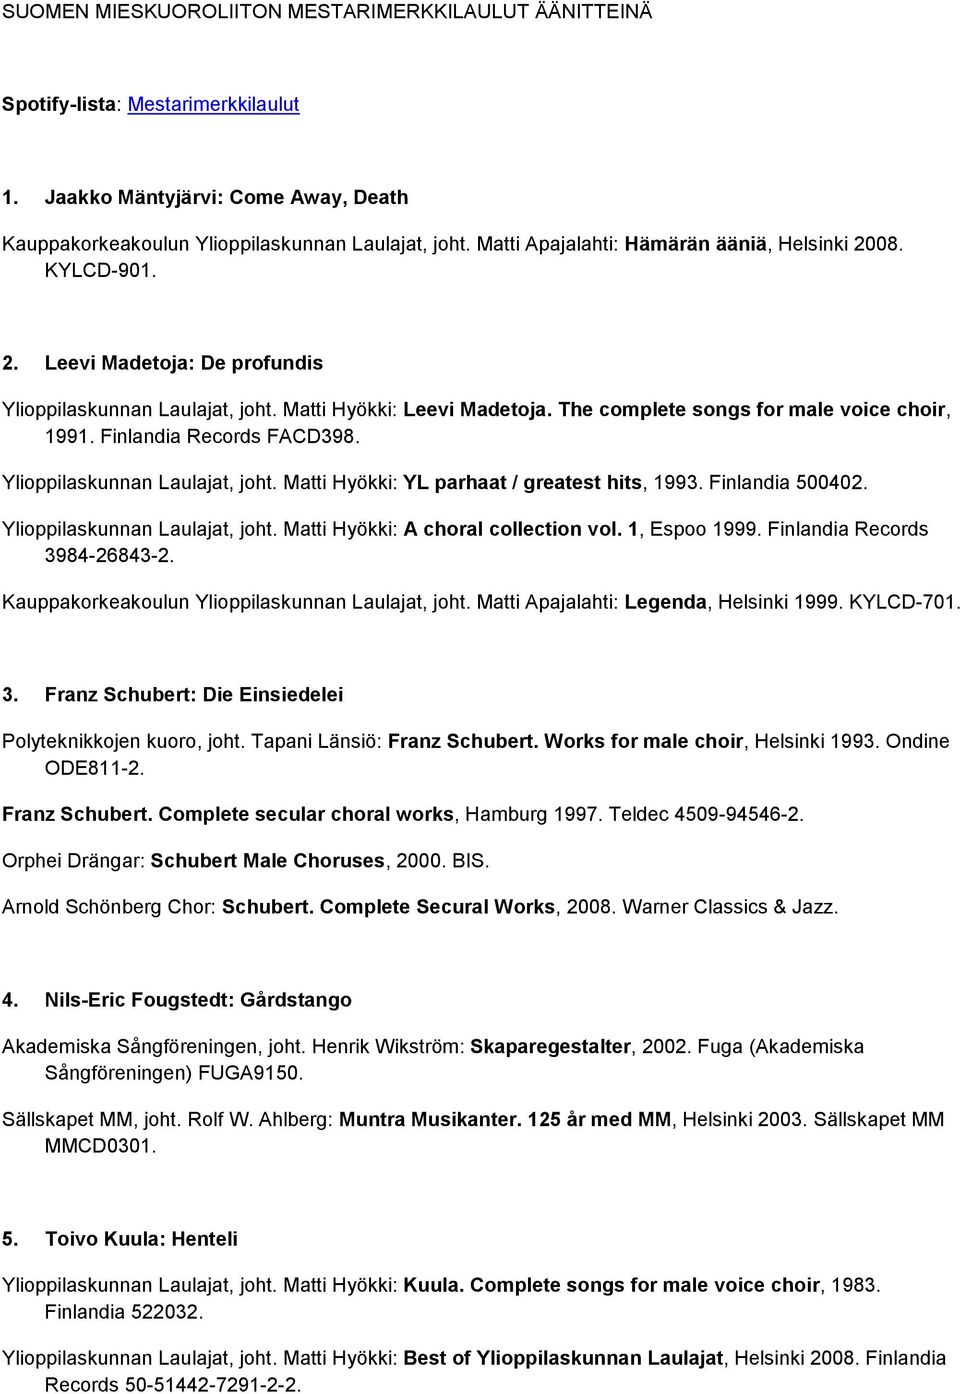 Finlandia Records FACD398. Kauppakorkeakoulun Ylioppilaskunnan Laulajat, joht. Matti Apajalahti: Legenda, Helsinki 1999. KYLCD-701. 3. Franz Schubert: Die Einsiedelei Polyteknikkojen kuoro, joht.